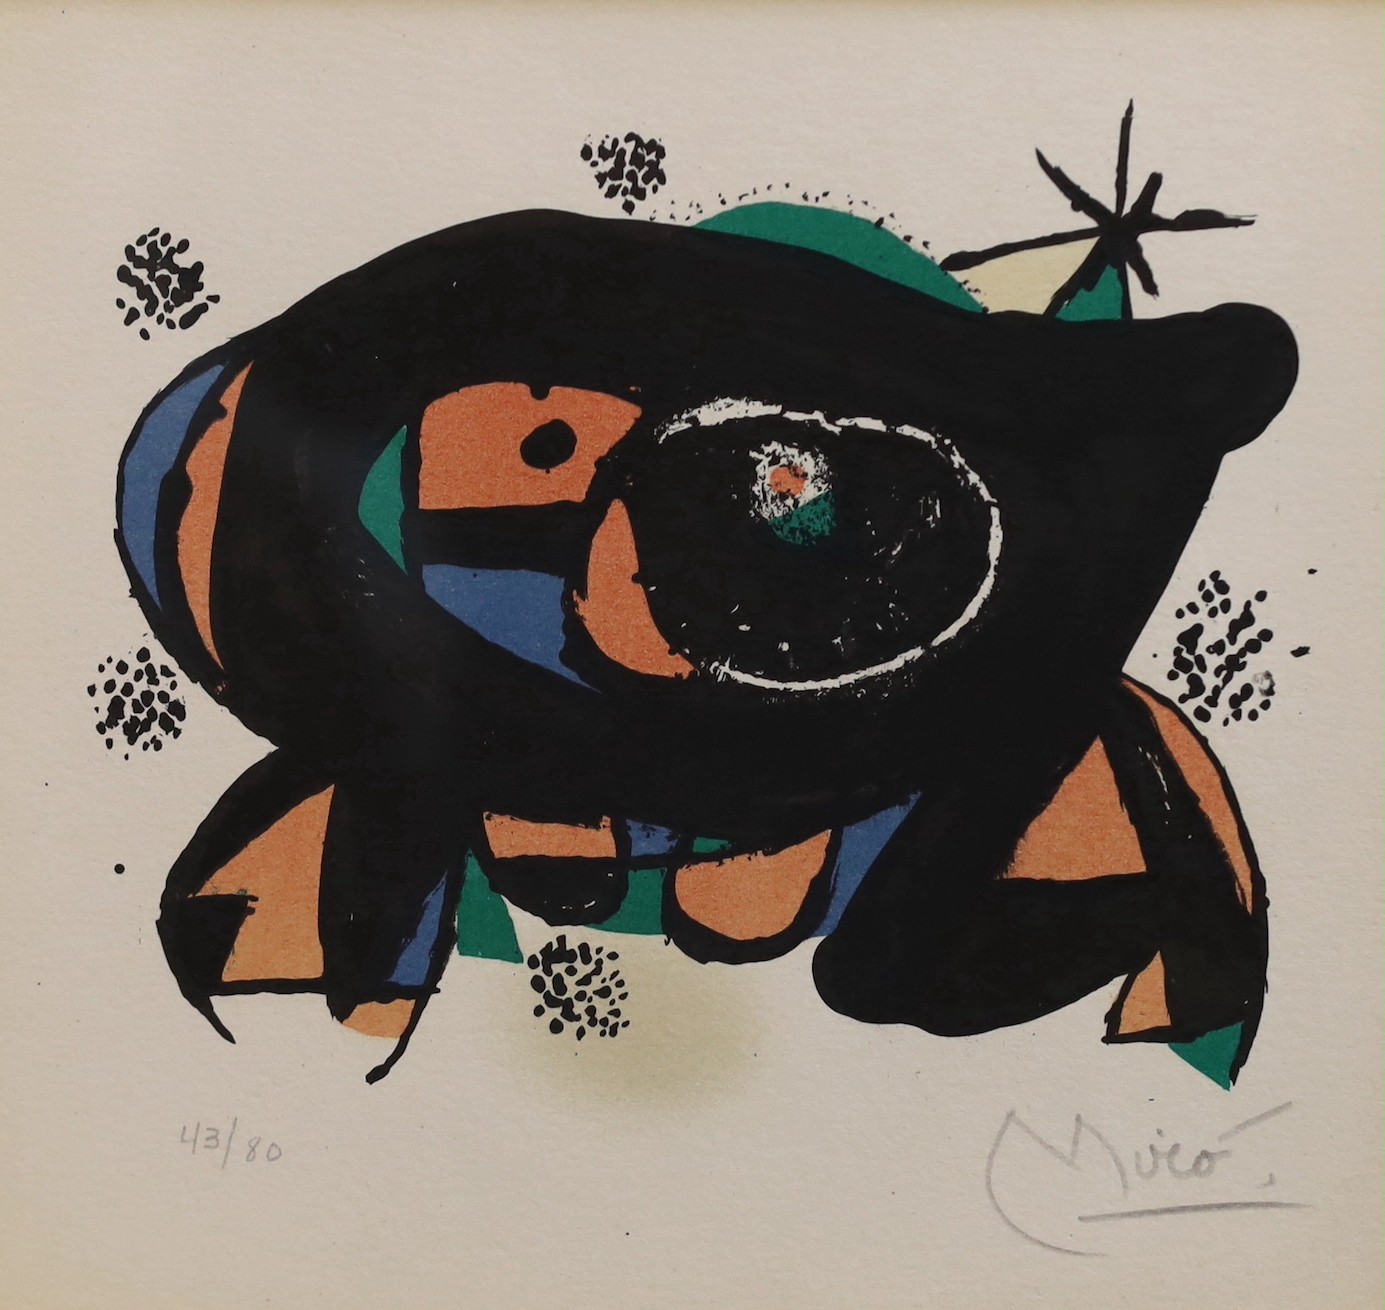 Joan Miro (Spanish, 1893-1983), 'La Rana' (The Frog), colour lithograph, 19 x 20cm